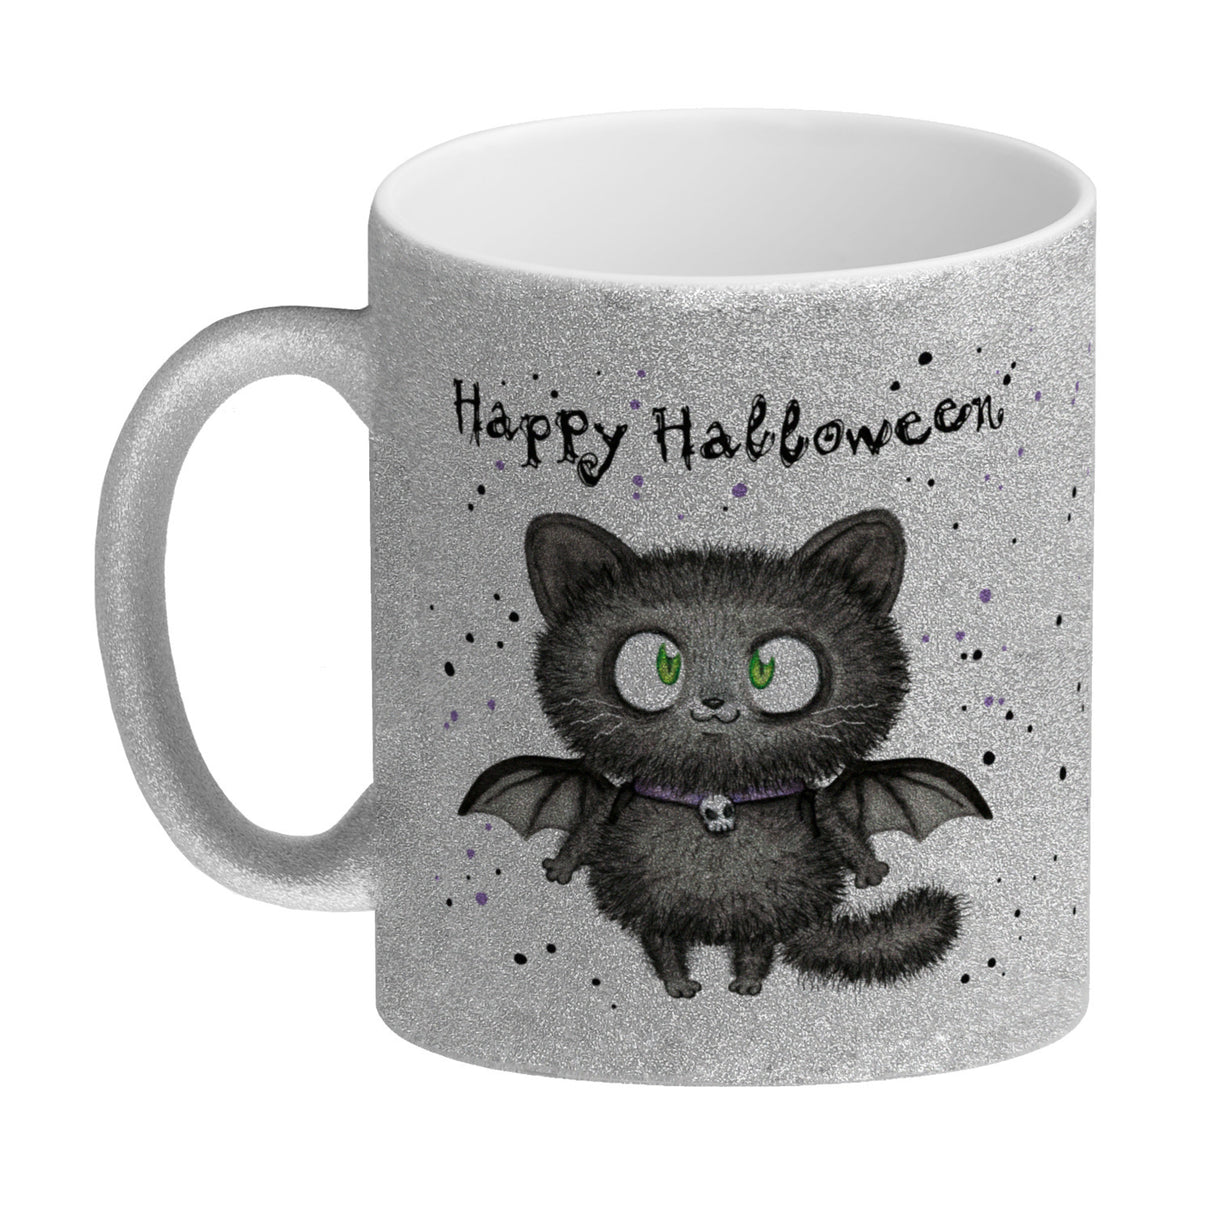 Happy Halloween Kaffeebecher mit schwarzer Fledermaus-Katze